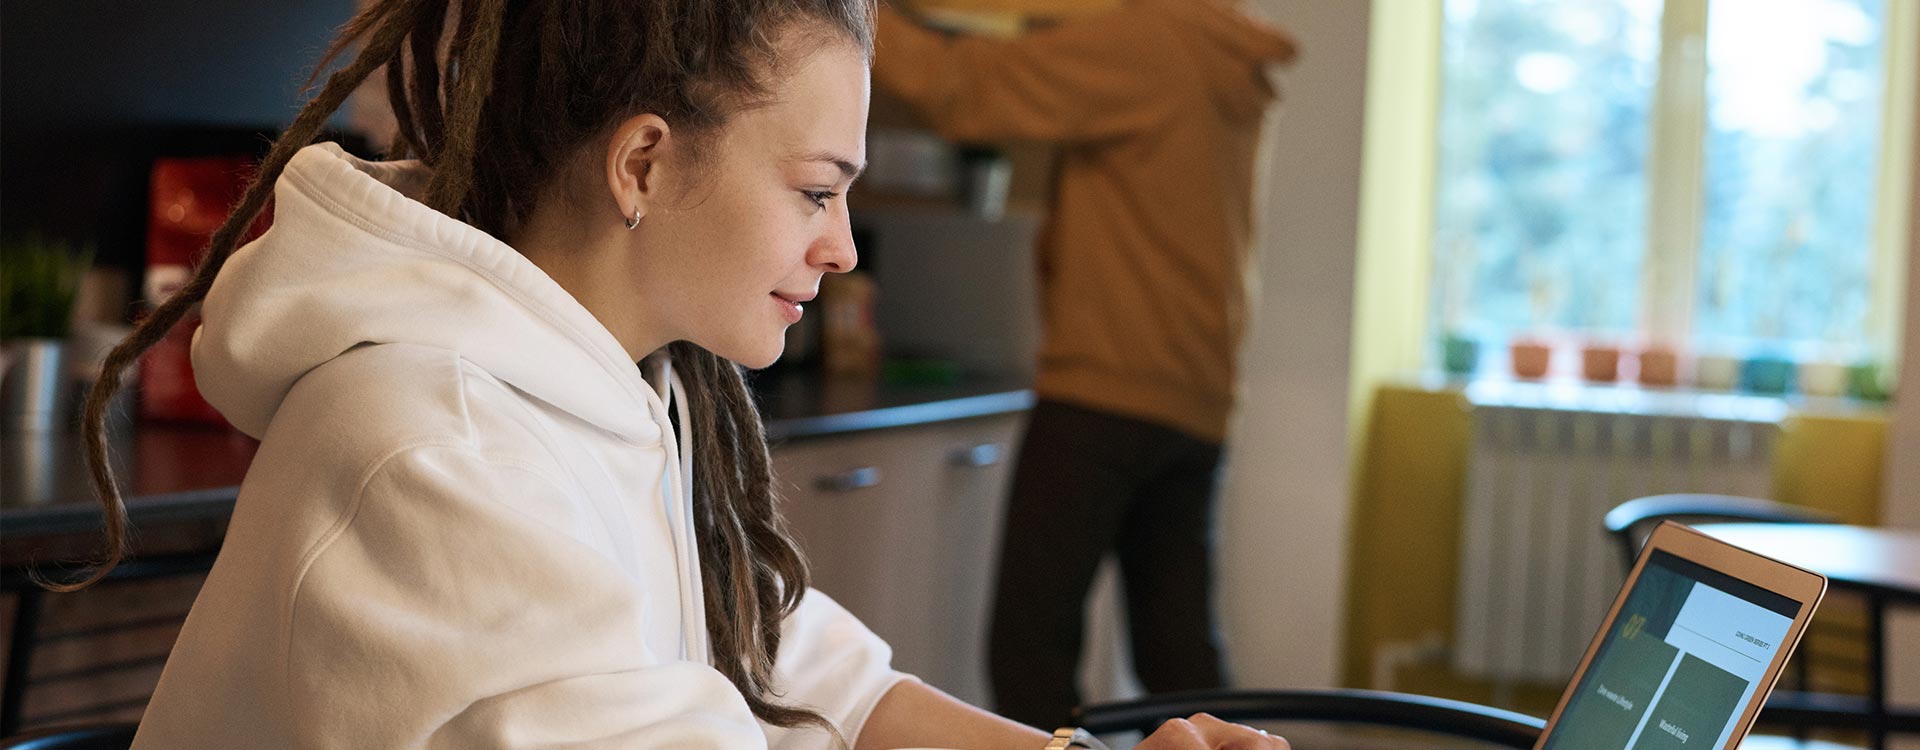 Mulher com dreadlocks desenvolve interface na mesa da cozinha: cena comum de quem quer trabalhar remoto a partir de casa